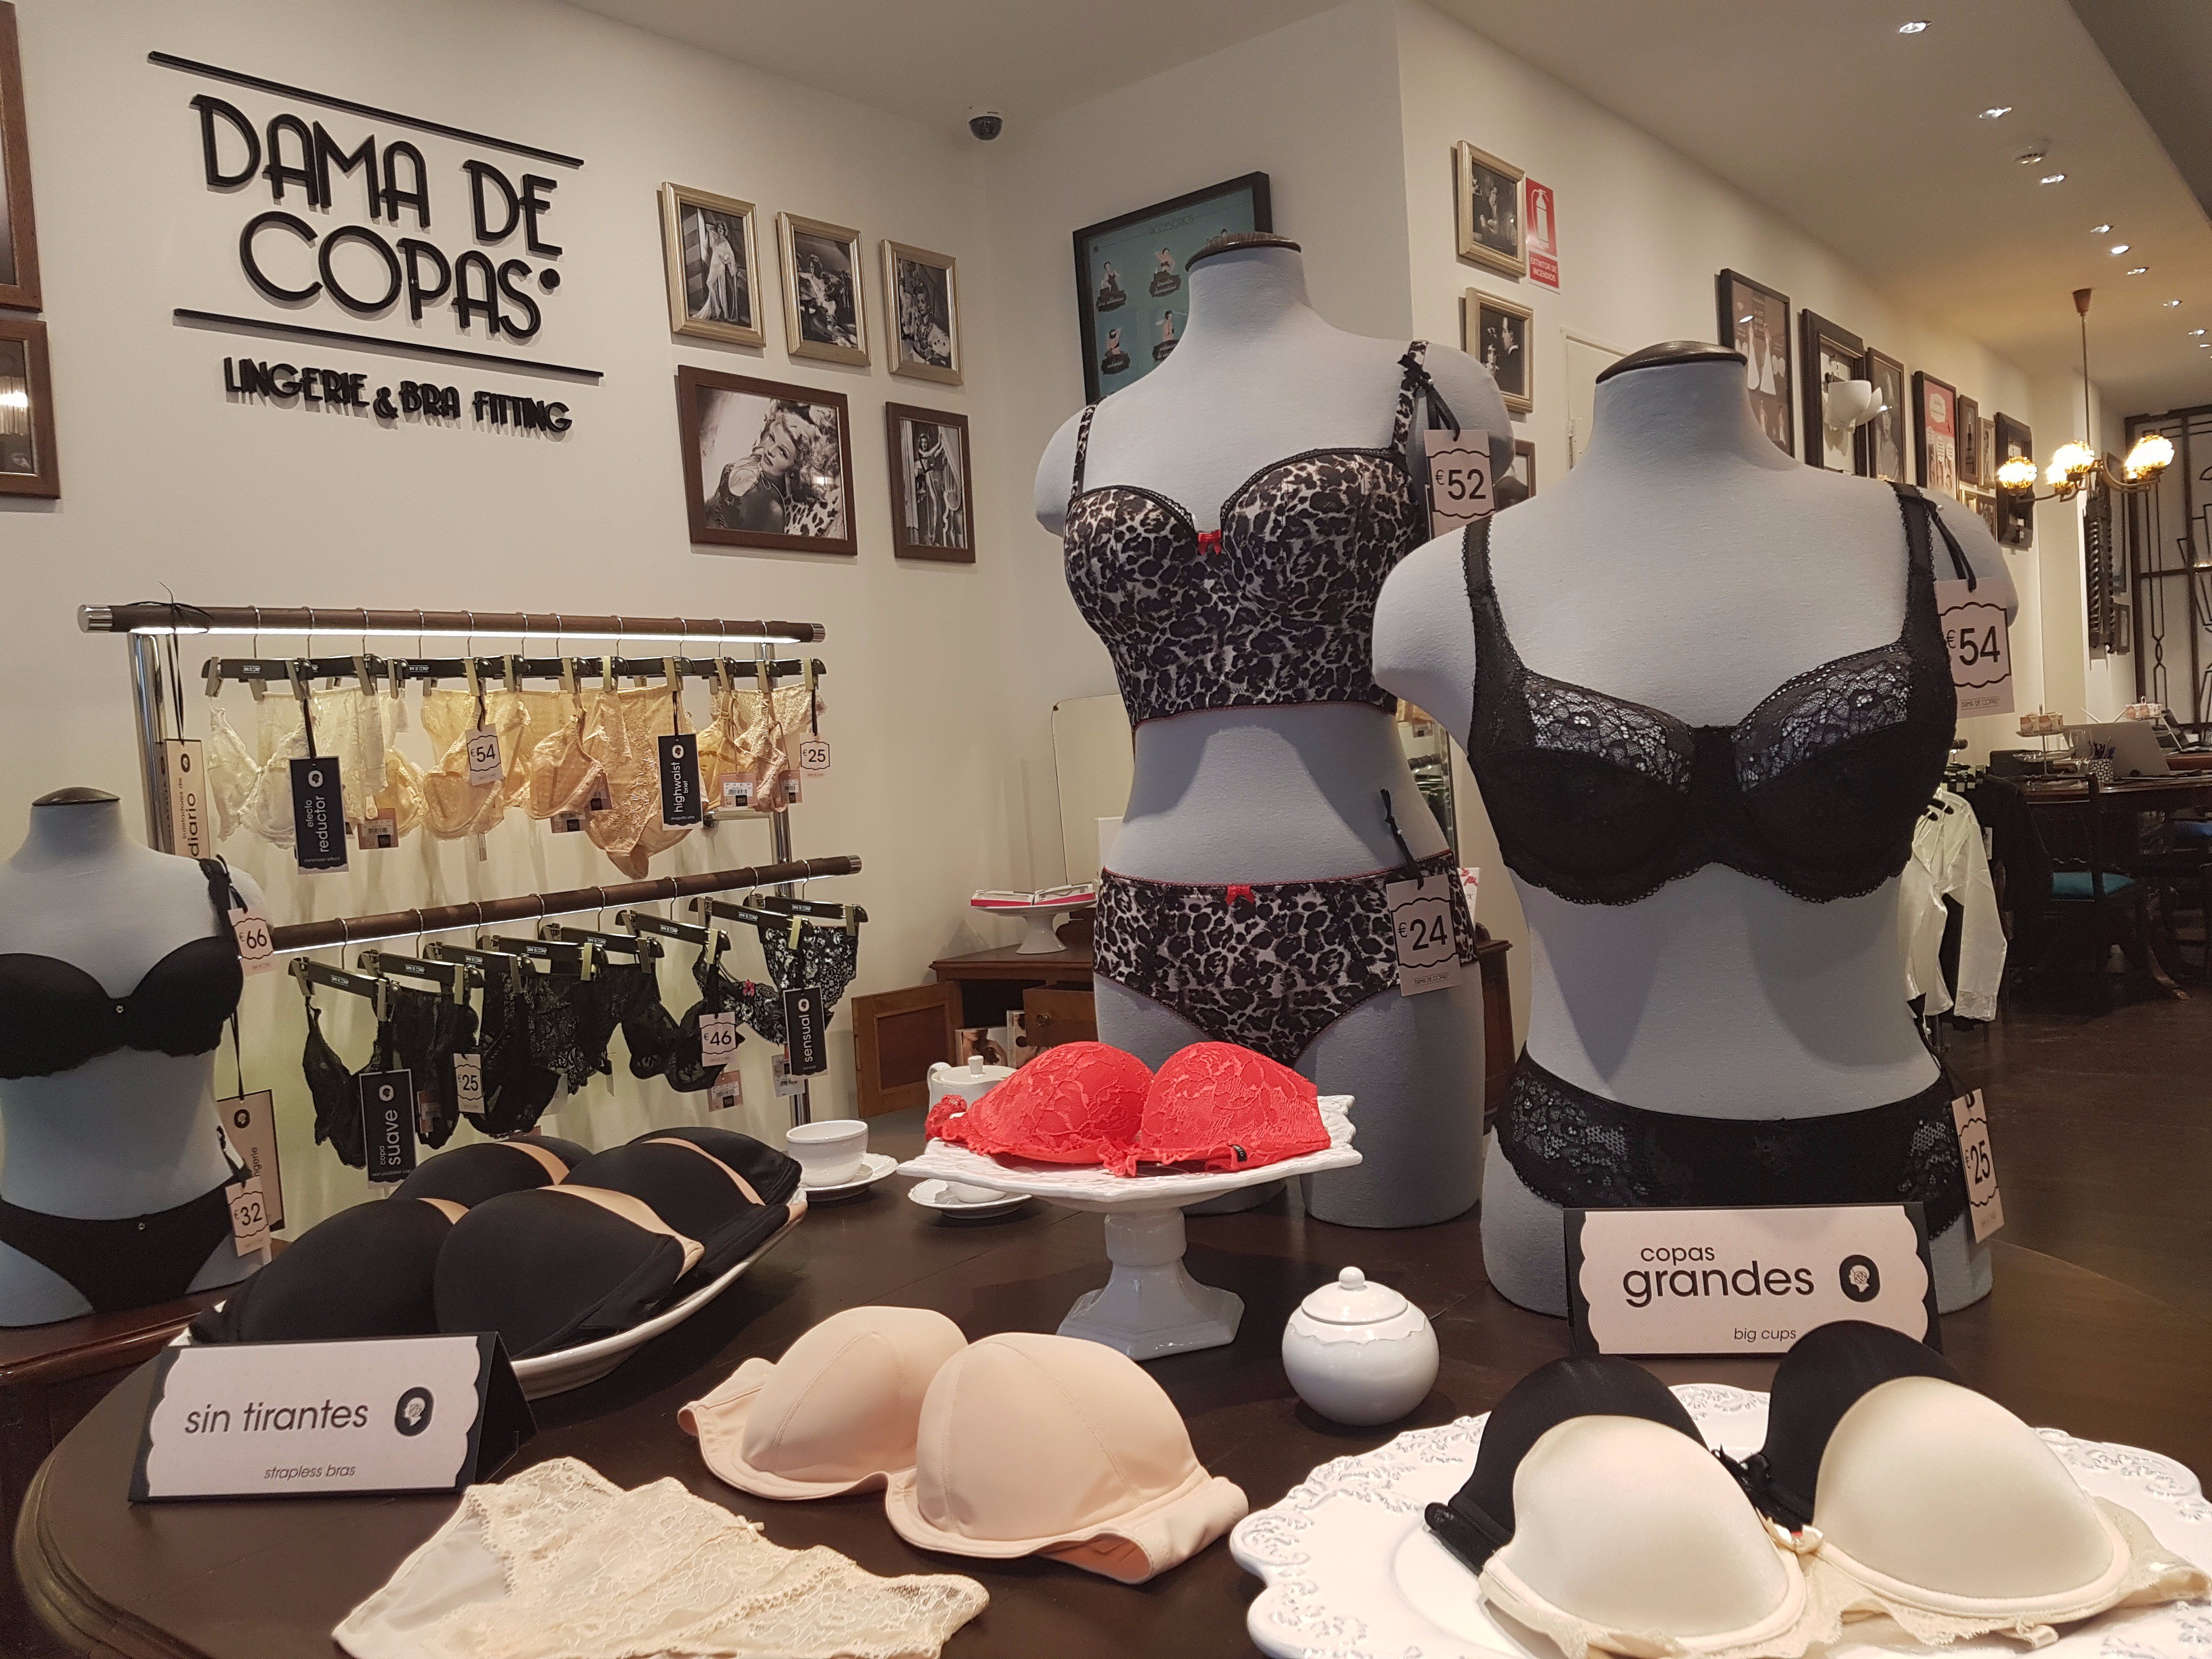 Dama de Copas España on Twitter: "La tienda ya está abierta al público, en la calle Pascual y 11, Dama de Copas Valencia tiene un ambiente muy íntimo y #femenino! https://t.co/xKQ3F1eEzH" /